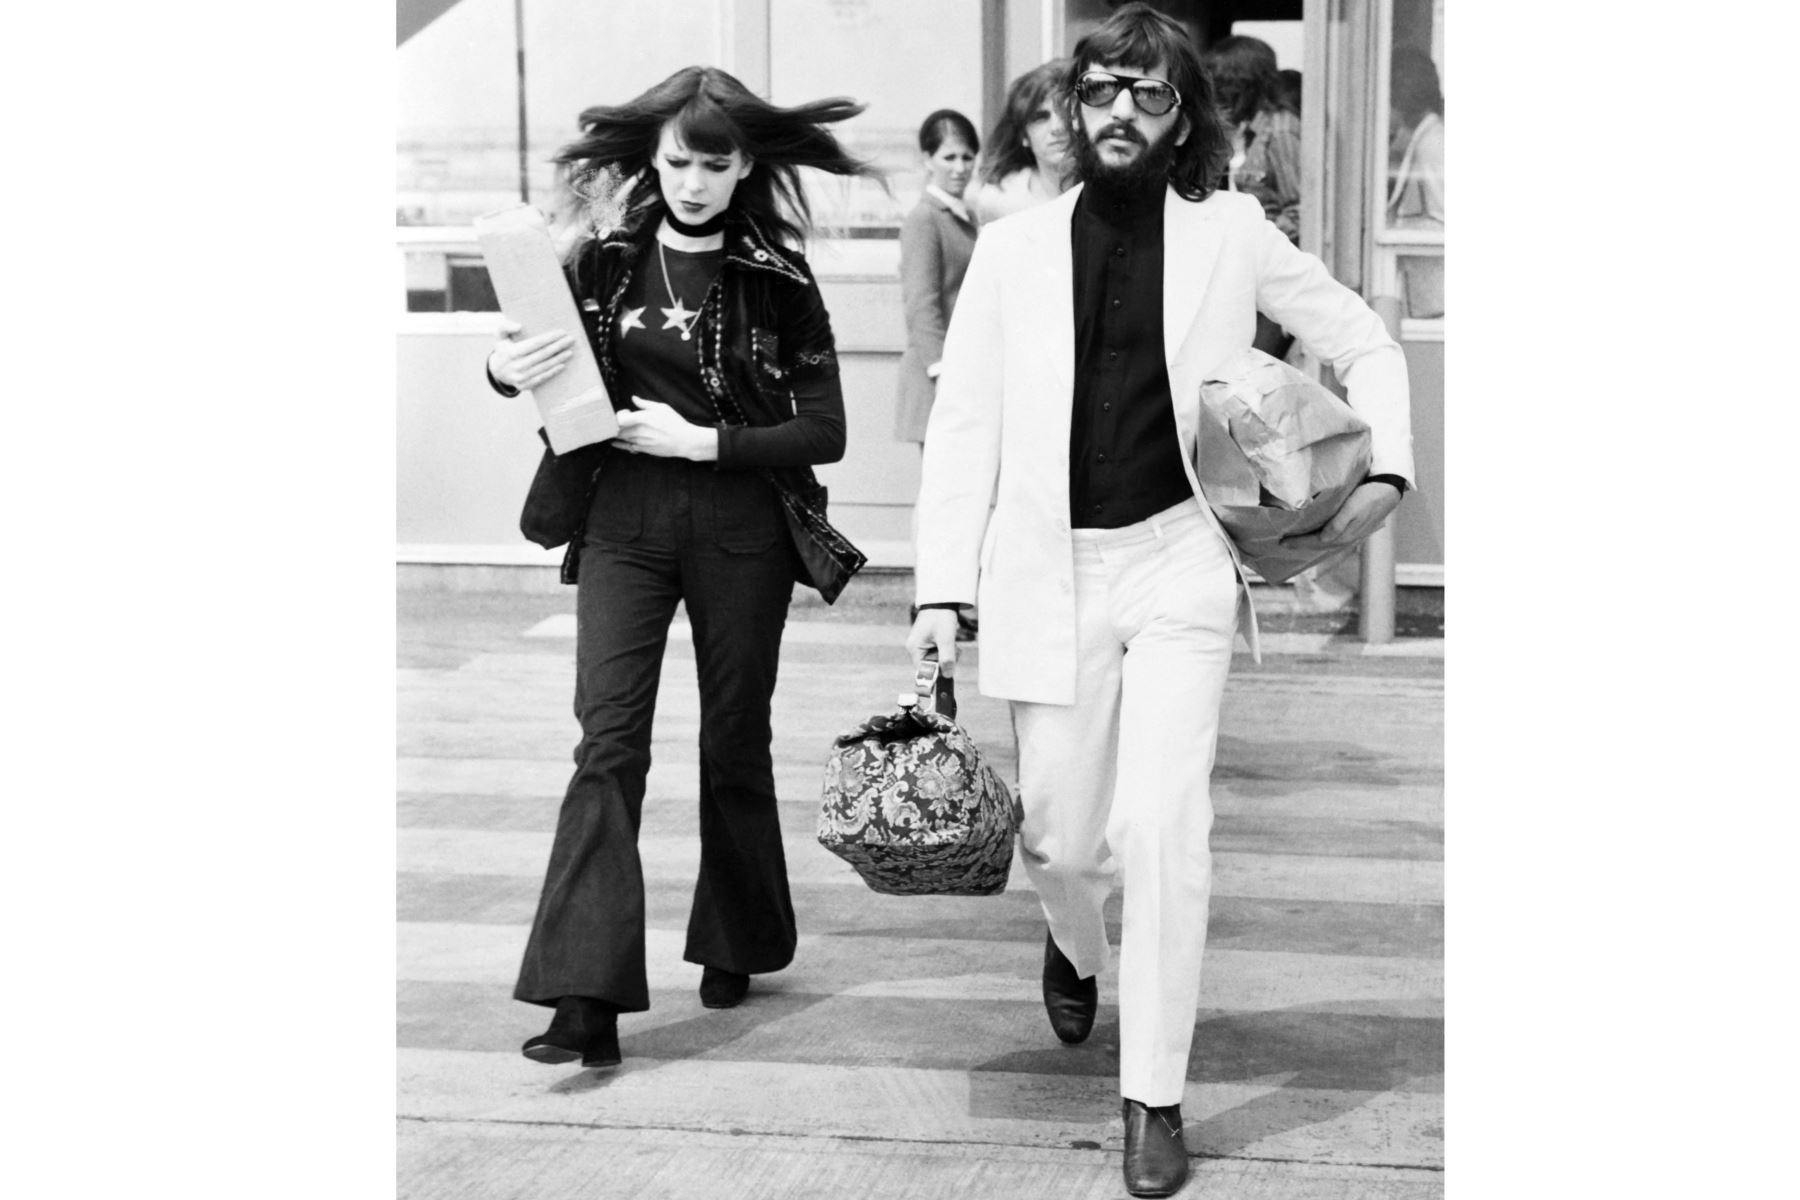 El músico británico Ringo Starr, ex miembro de The Beatles, y su esposa Maureen, fotografiados el 13 de mayo de 1971 en Londres.
Foto: AFP